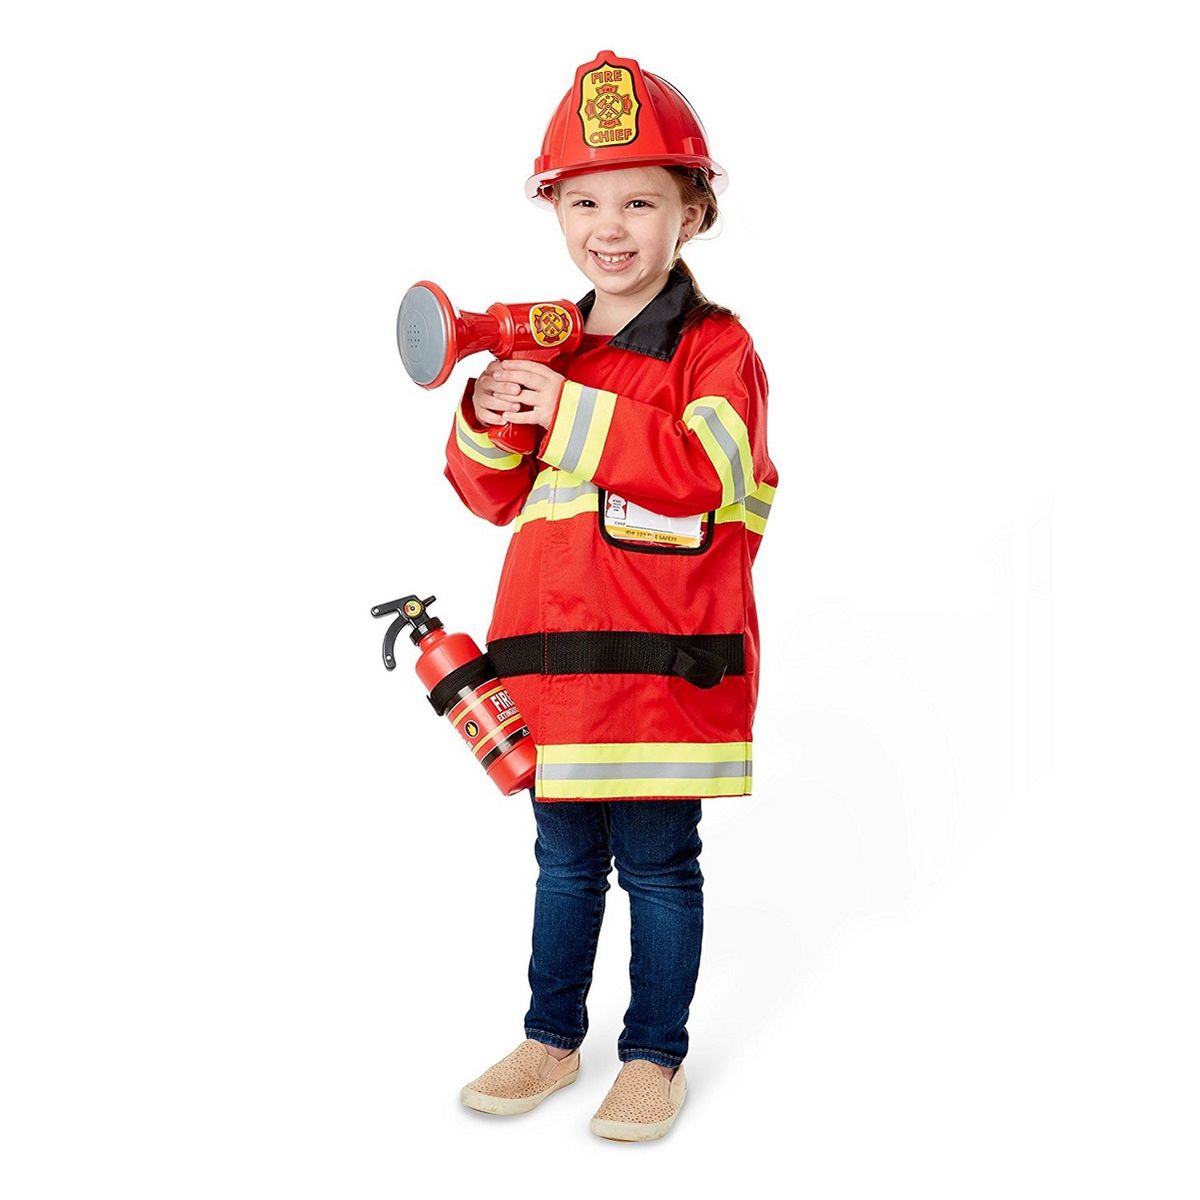 Accessoire de pompier pour enfants - Déguisement Mania